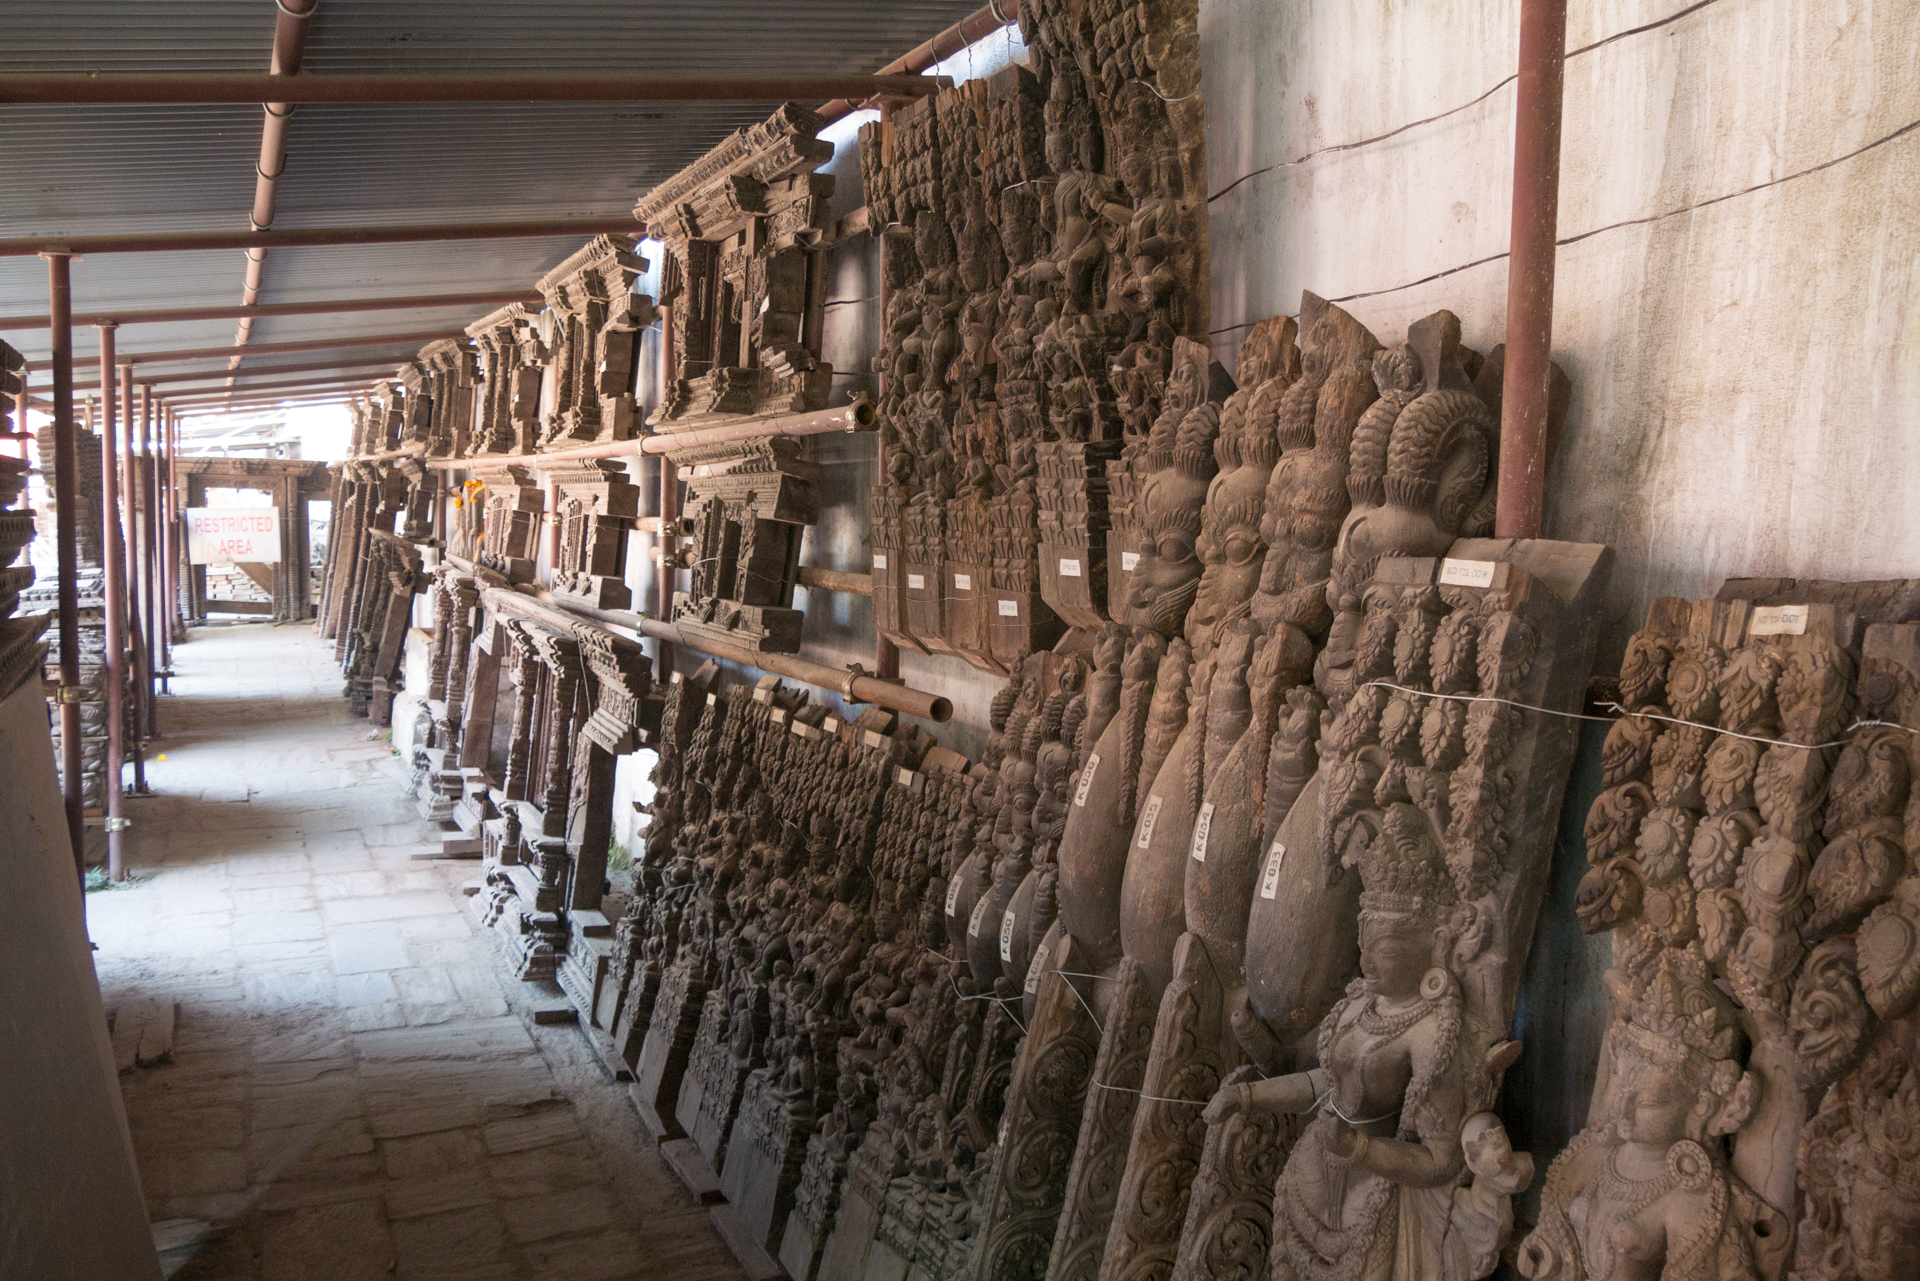 Les sculptures sont numérotées - La vallée de Kathmandu